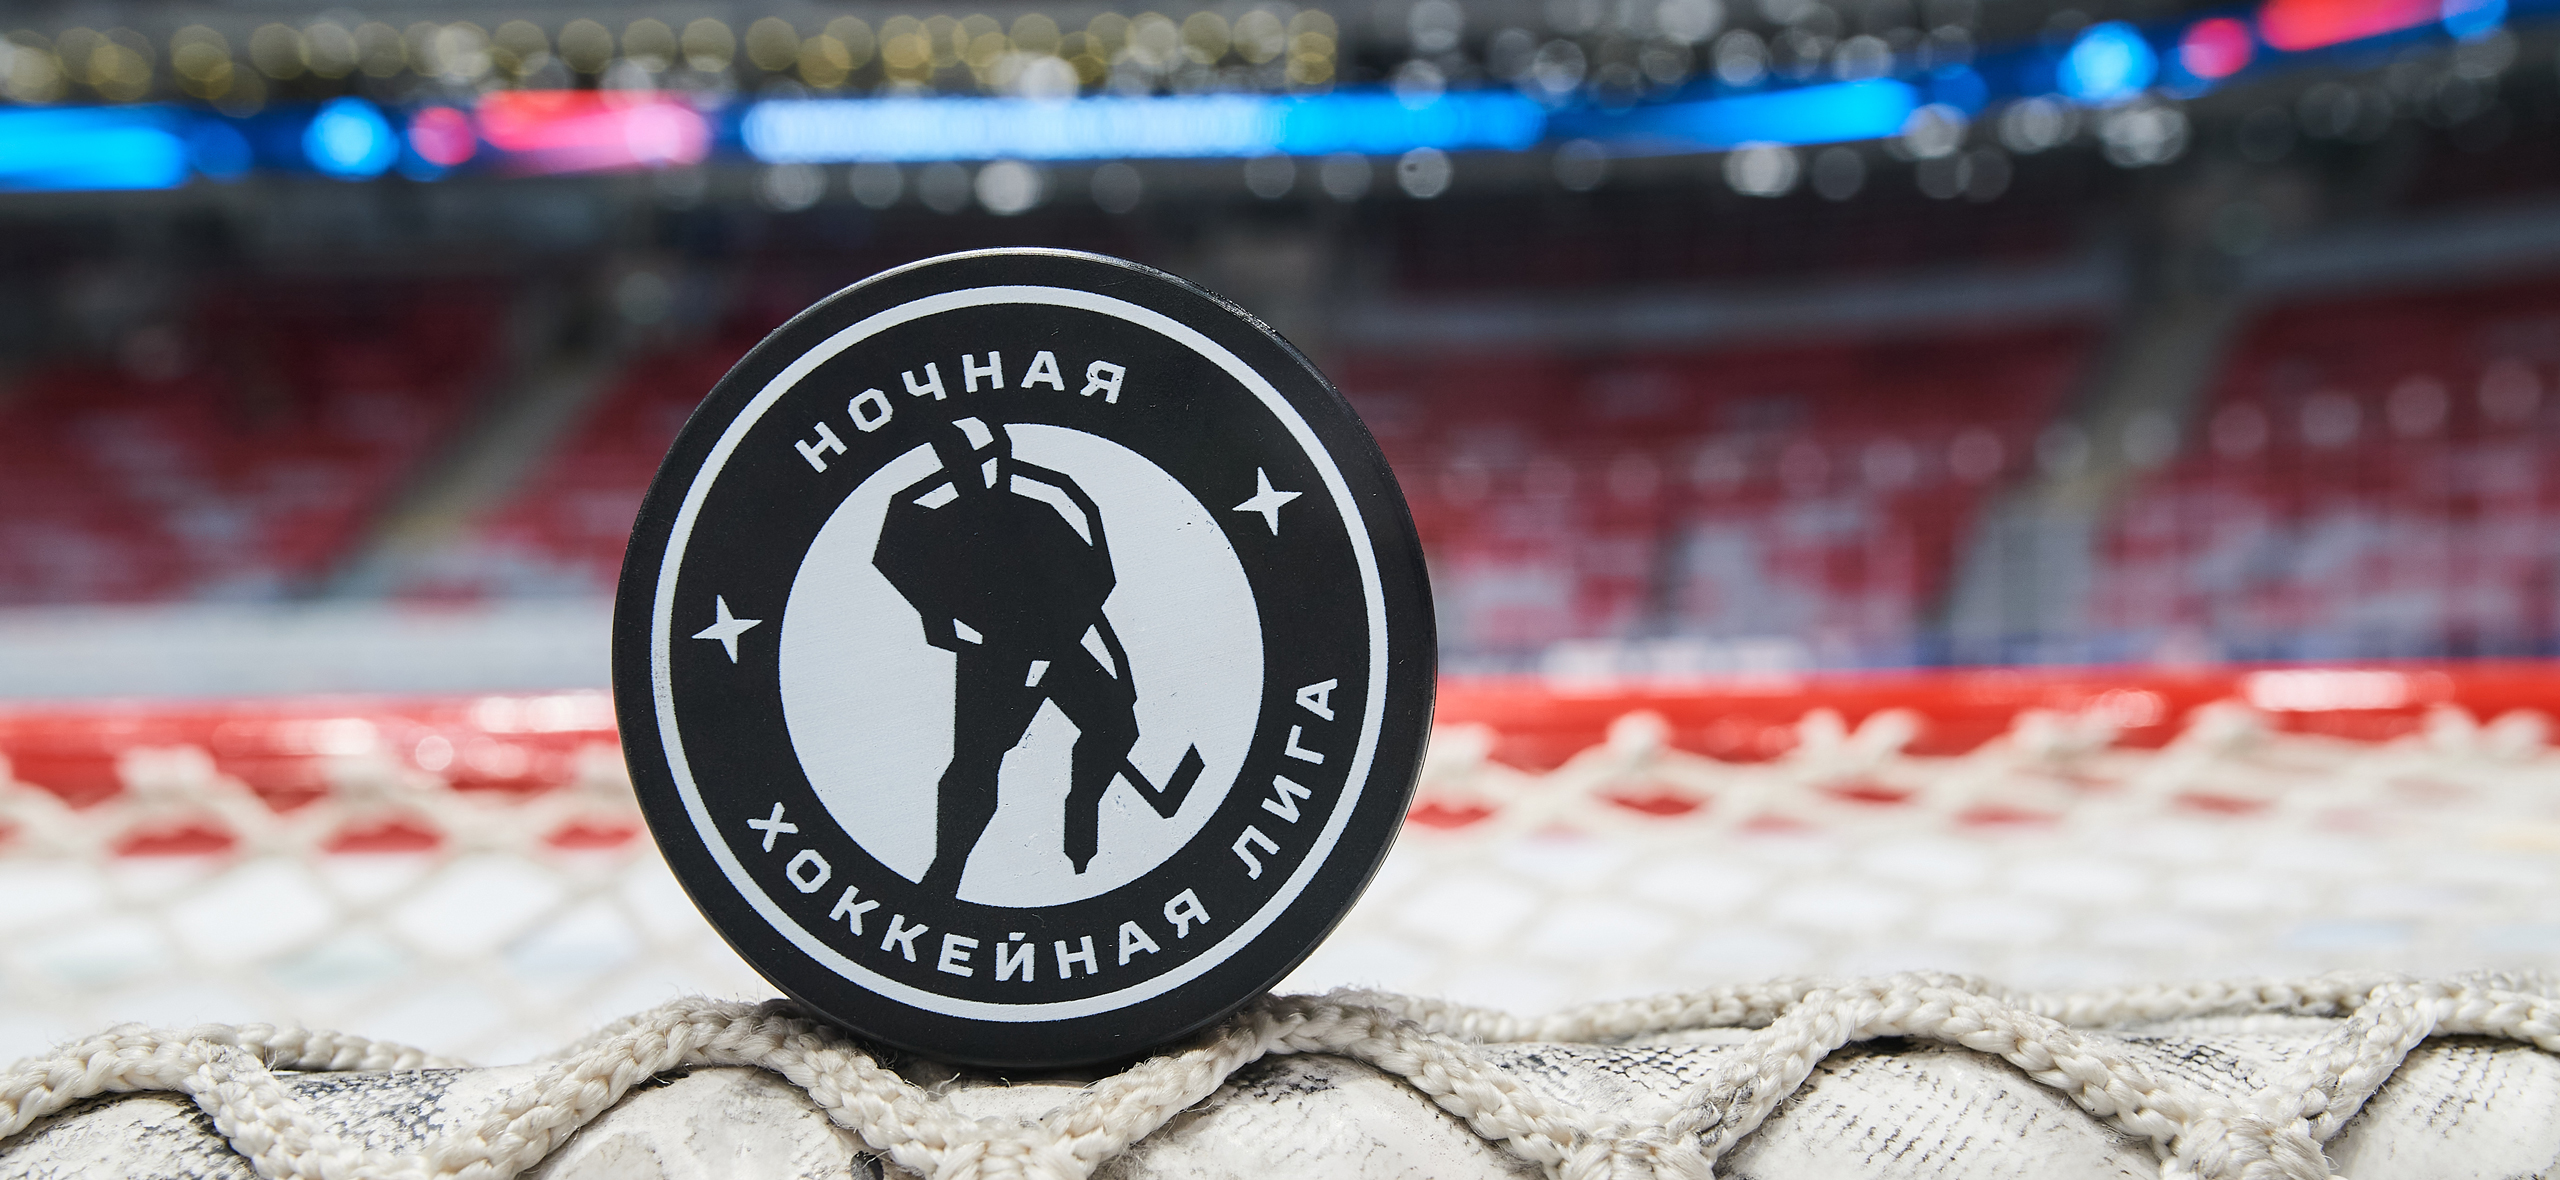 Ночная хоккейная лига: как устроен самый масш­таб­ный любите­льский турнир России